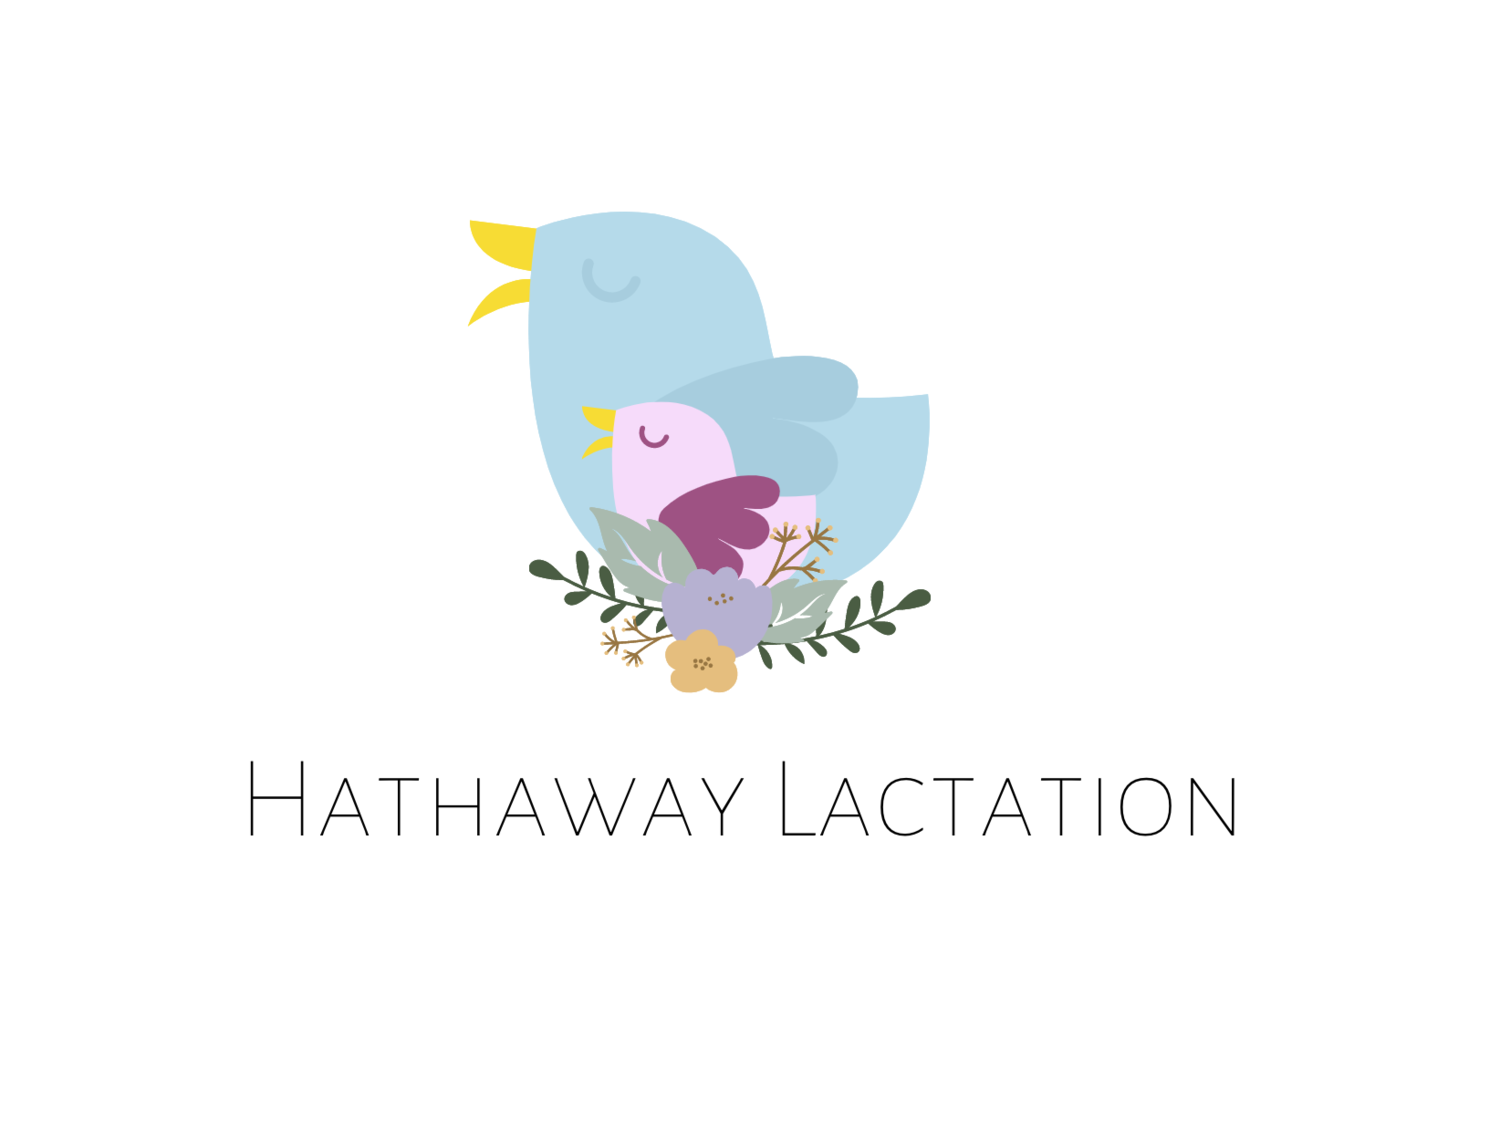 Hathaway Lactation